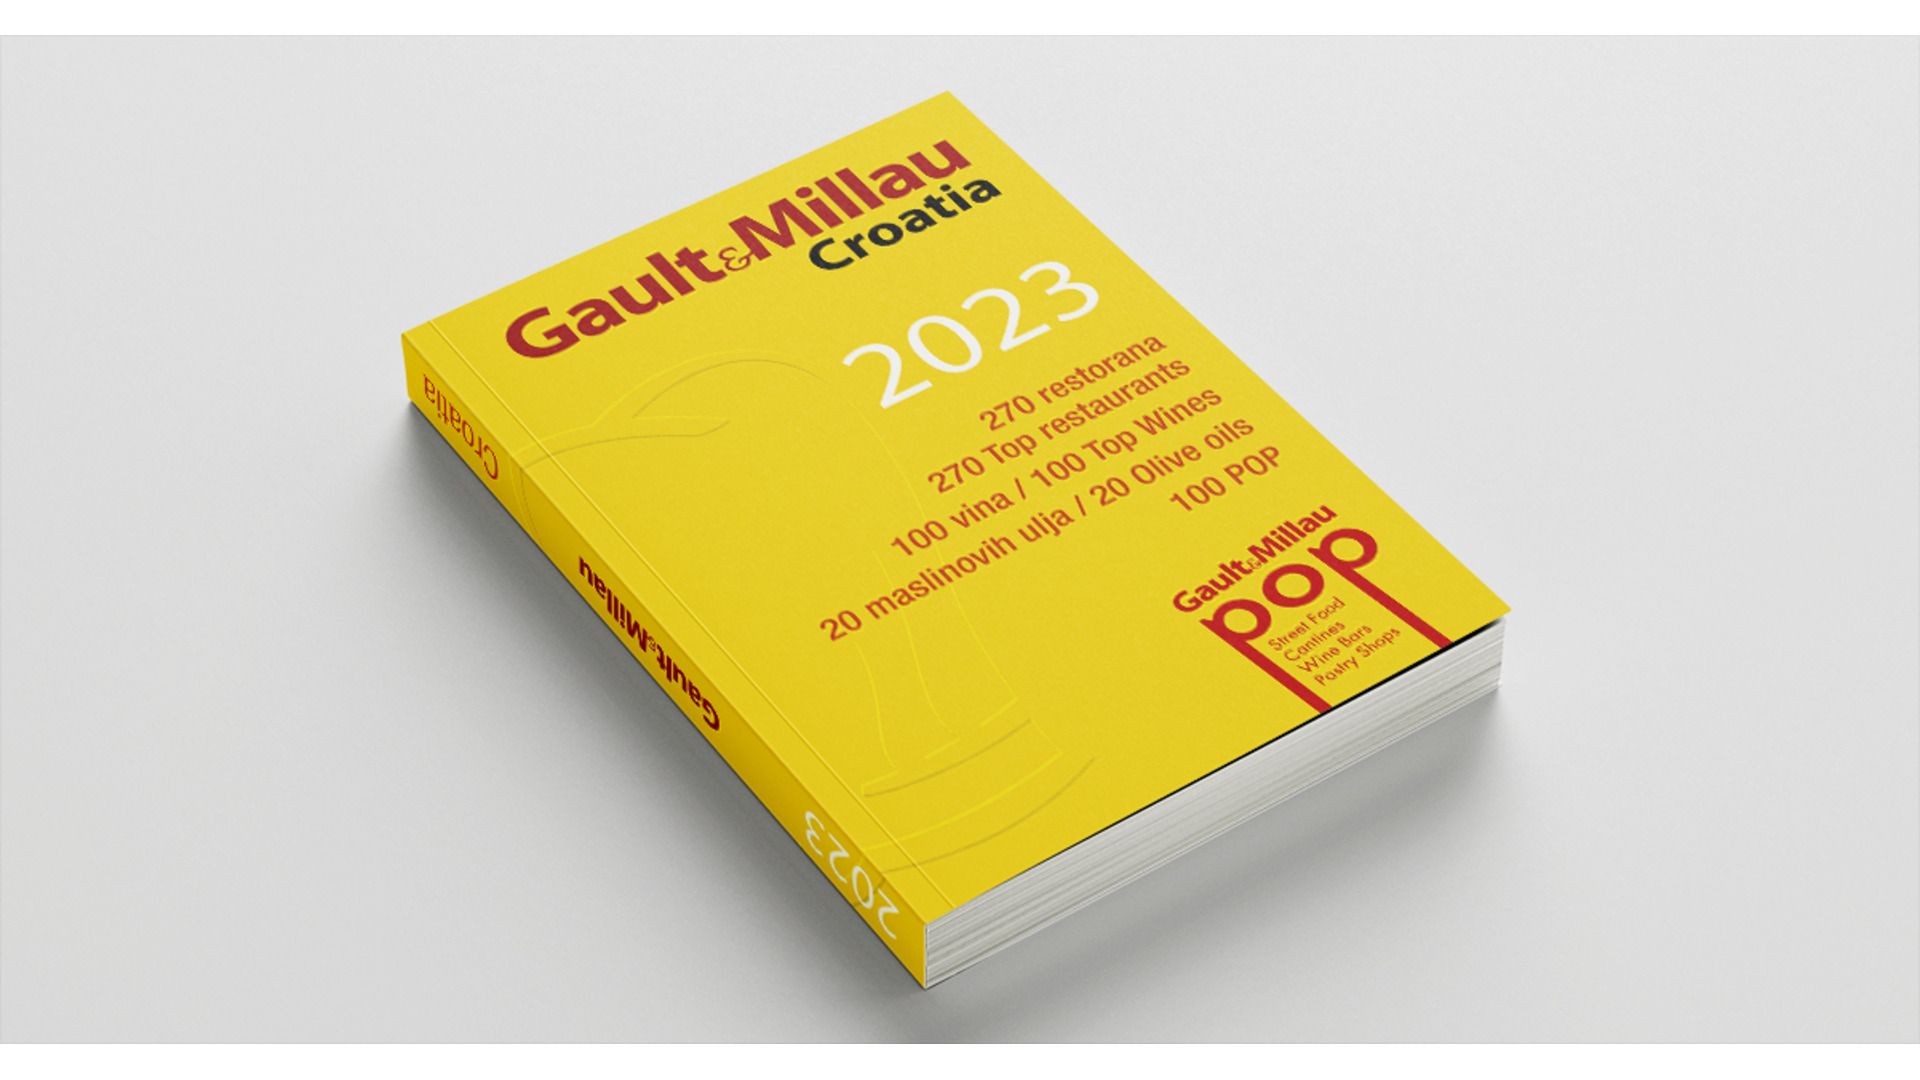 <p><span>Jedan od najrelevantnija gastronomska vodiča na svijetu, Gault&amp;Millau, uvrstio je zagrebački Pita Cut u svoj vodič – <a href="https://hr.gaultmillau.com/restaurants/pita-cut">Gault&amp;Millau Croatia 2023</a>.</span></p>
<p><span>Prepoznatljiva žuta naljepnica vodiča Gault&amp;Millau koja jamči provjerenu kvalitetu jela i usluga nam je veliko priznanje posebice jer smo se tako našli u društvu najboljih restorana Hrvatske, što nam čini posebnu čast!</span></p>
<p><span>Vodič Gault&amp;Millau pokrenuli se 1965. poznati gastronomski kritičari Henri Gault i Christian Millau. Uživa velik ugled među putnicima i ljubiteljima dobre hrane, koji s punim povjerenjem slijede njegove preporuke. Riječ je o nezavisnim, vjerodostojnim recenzijama anonimnih ocjenjivača koji posjećuju restorane, sami plaćaju svoje račune i ocjenjuju hranu i uslugu.</span></p>
<p><span><img src="	1695657479-384075215-1318364655477269-8505841211781033205-n-articles.jpg" alt="" /><img src="/assets/photos/editor/384075215_1318364655477269_85058.jpg" alt="" width="600" height="600" /></span></p>